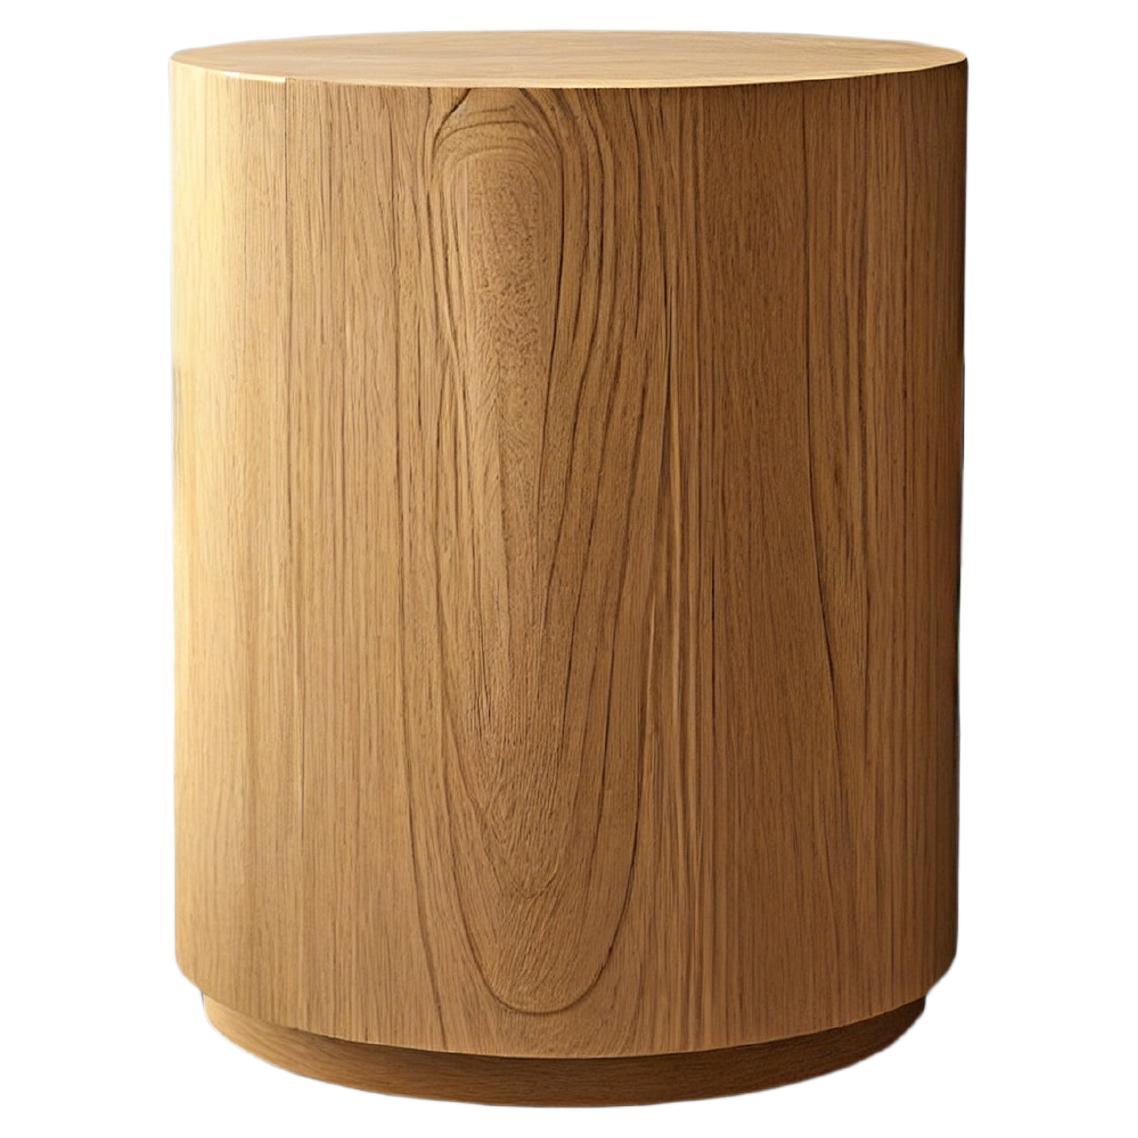 Table d'appoint ronde en placage de chêne par NONO Furniture